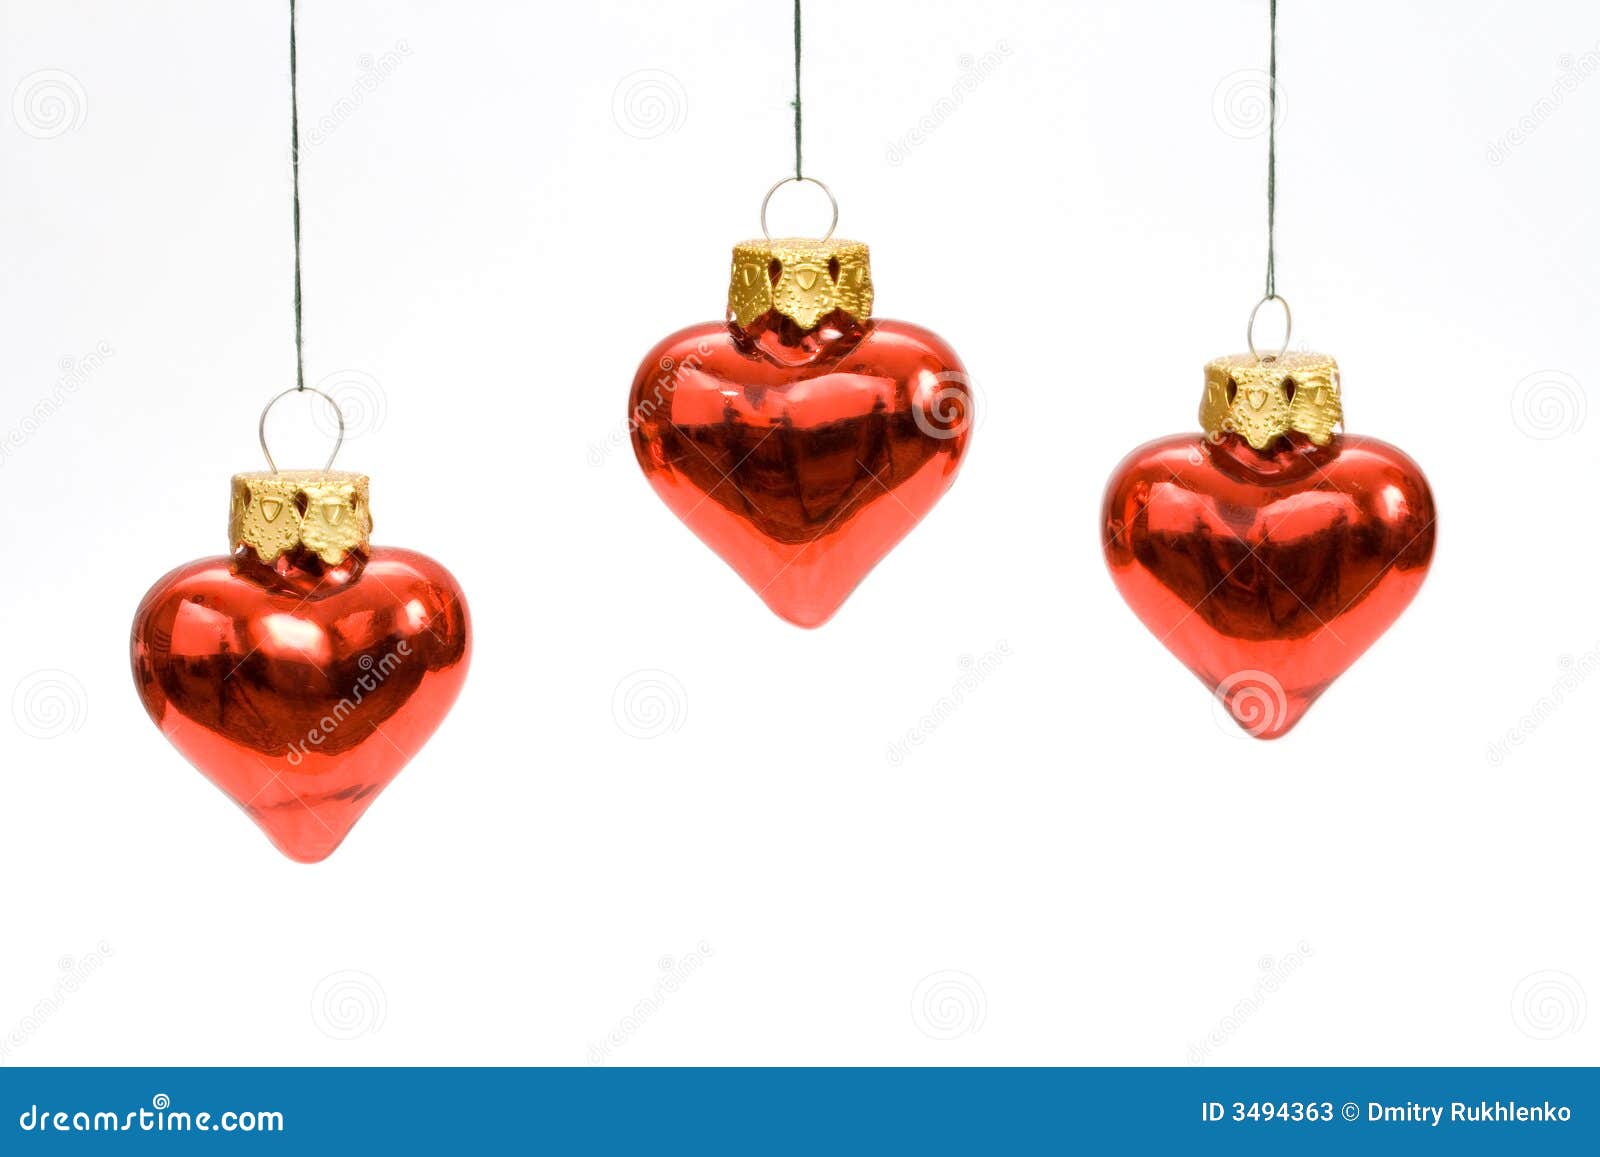 Hangend rood gevormd hart drie. Drie hangende rode hart gevormde snuisterijen van Kerstmis die op wit worden geïsoleerde